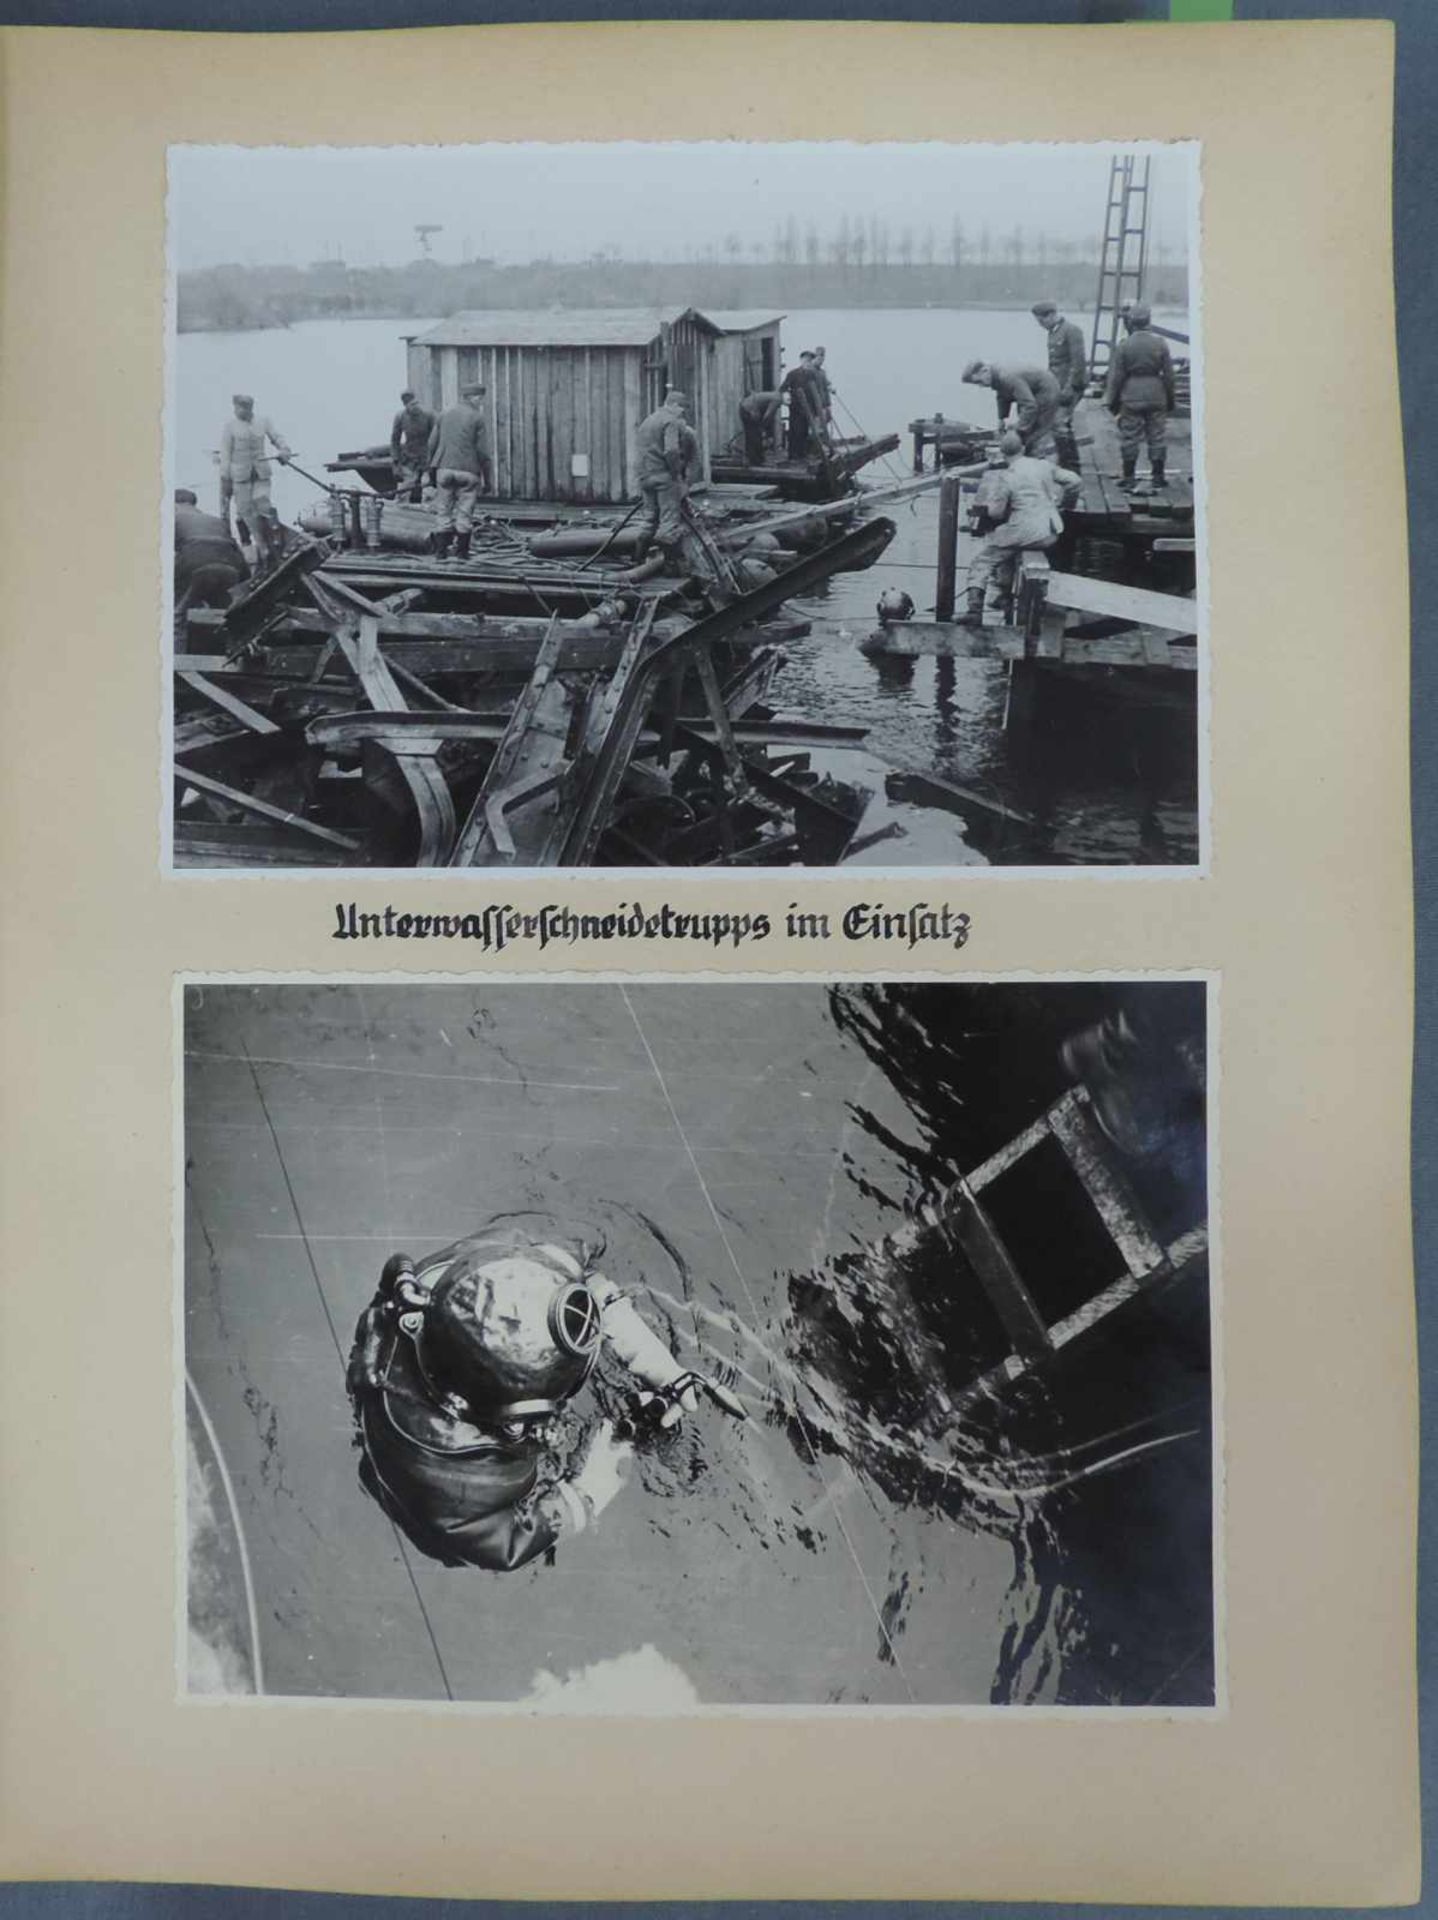 Album des Herrn Major Groth zum 24.12.1944. Fotodokumentation der Wiederherstellung der - Image 4 of 7